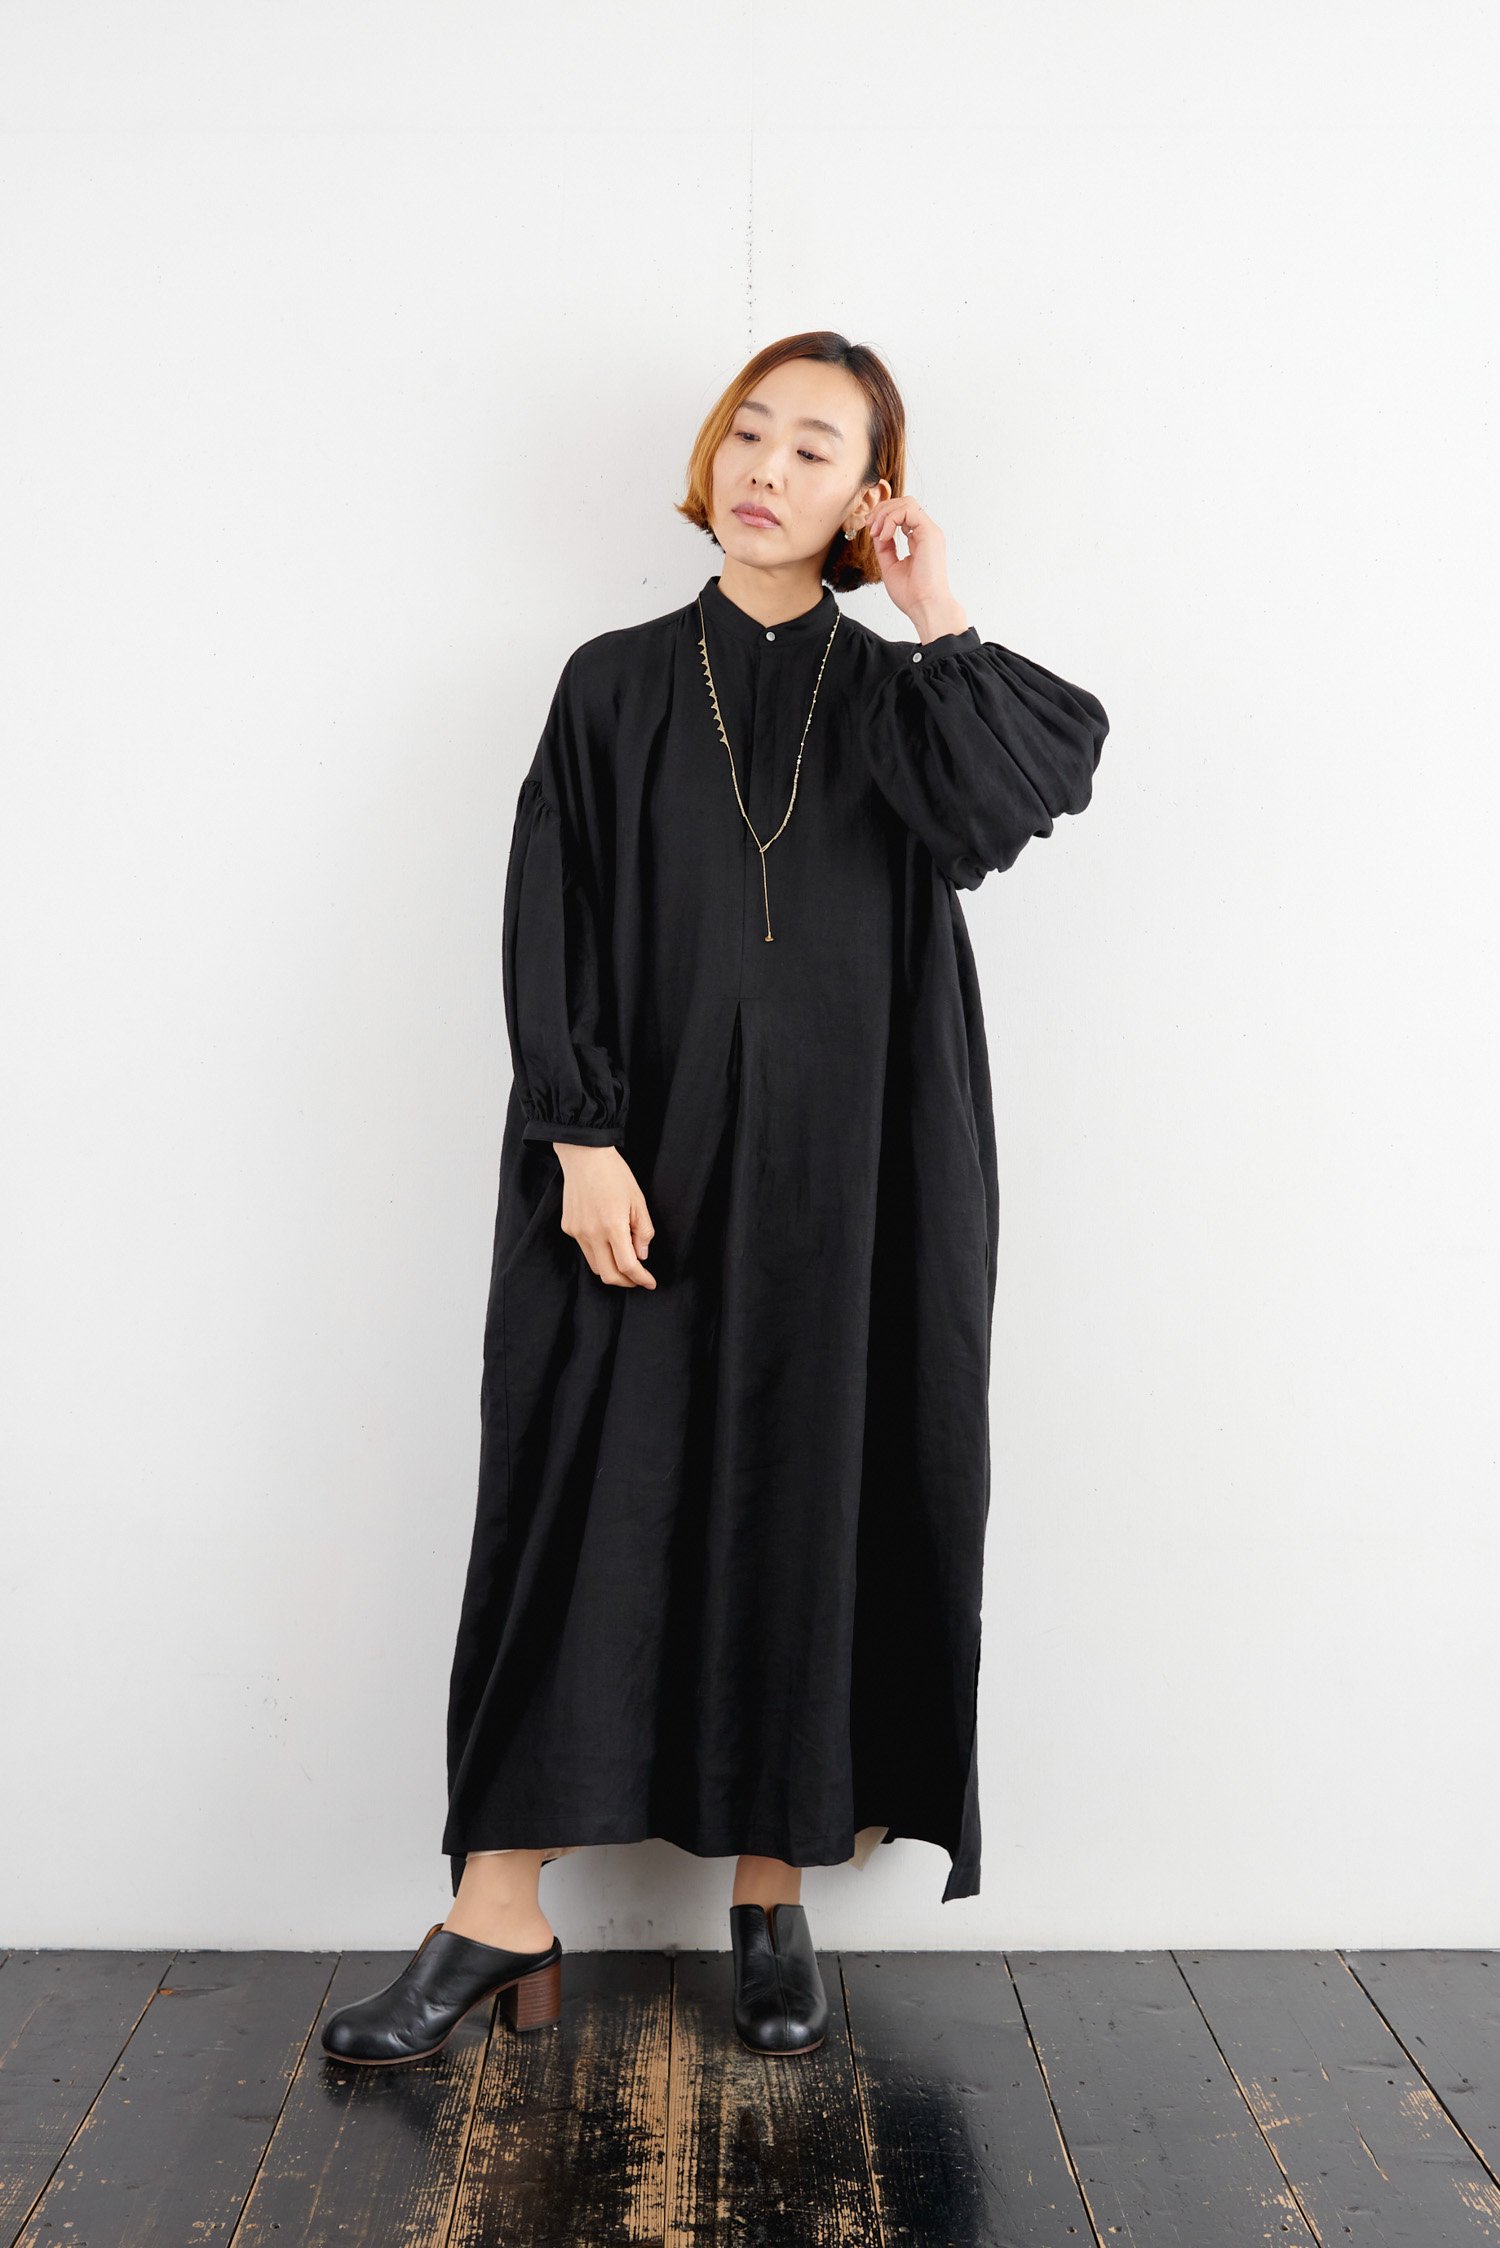 最終 suzuki takayuki peasant dressⅡ | chidori.co